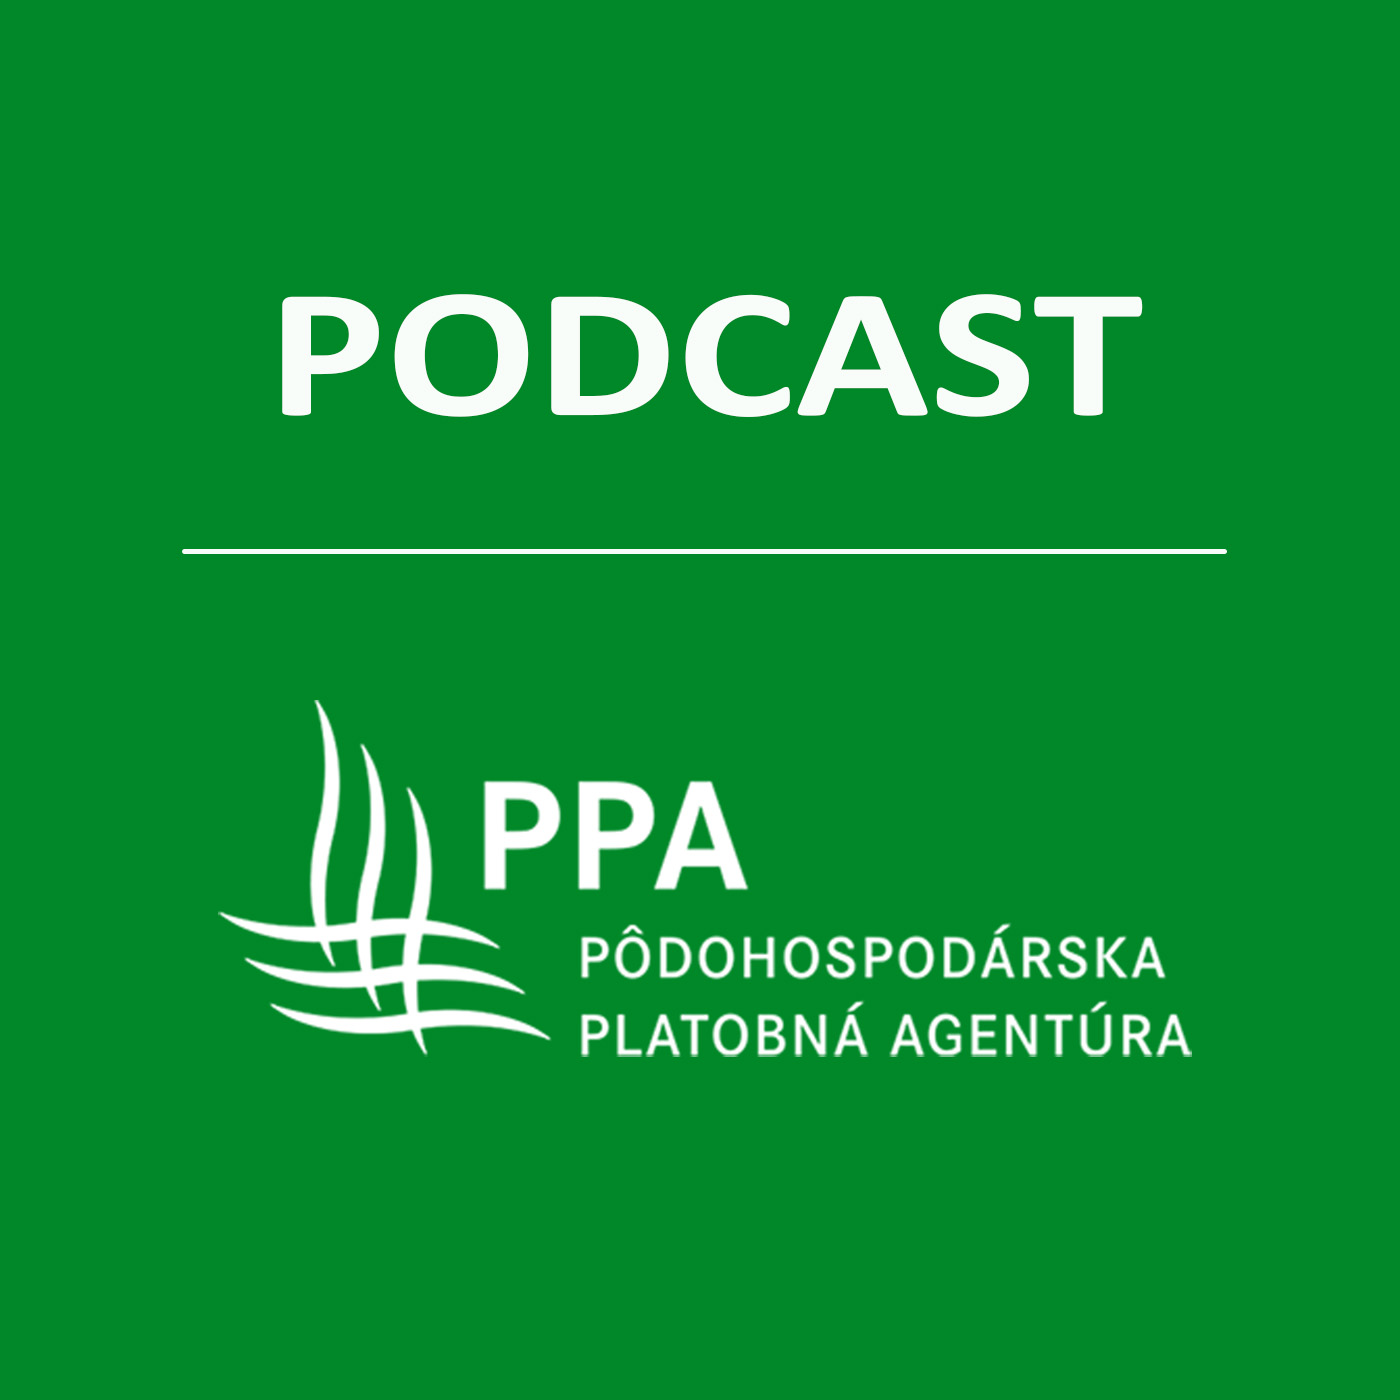 PPA PODCAST(audio):Ako pomáha PPA žiadateľom s platením poistného a s účasťou na výstavách?